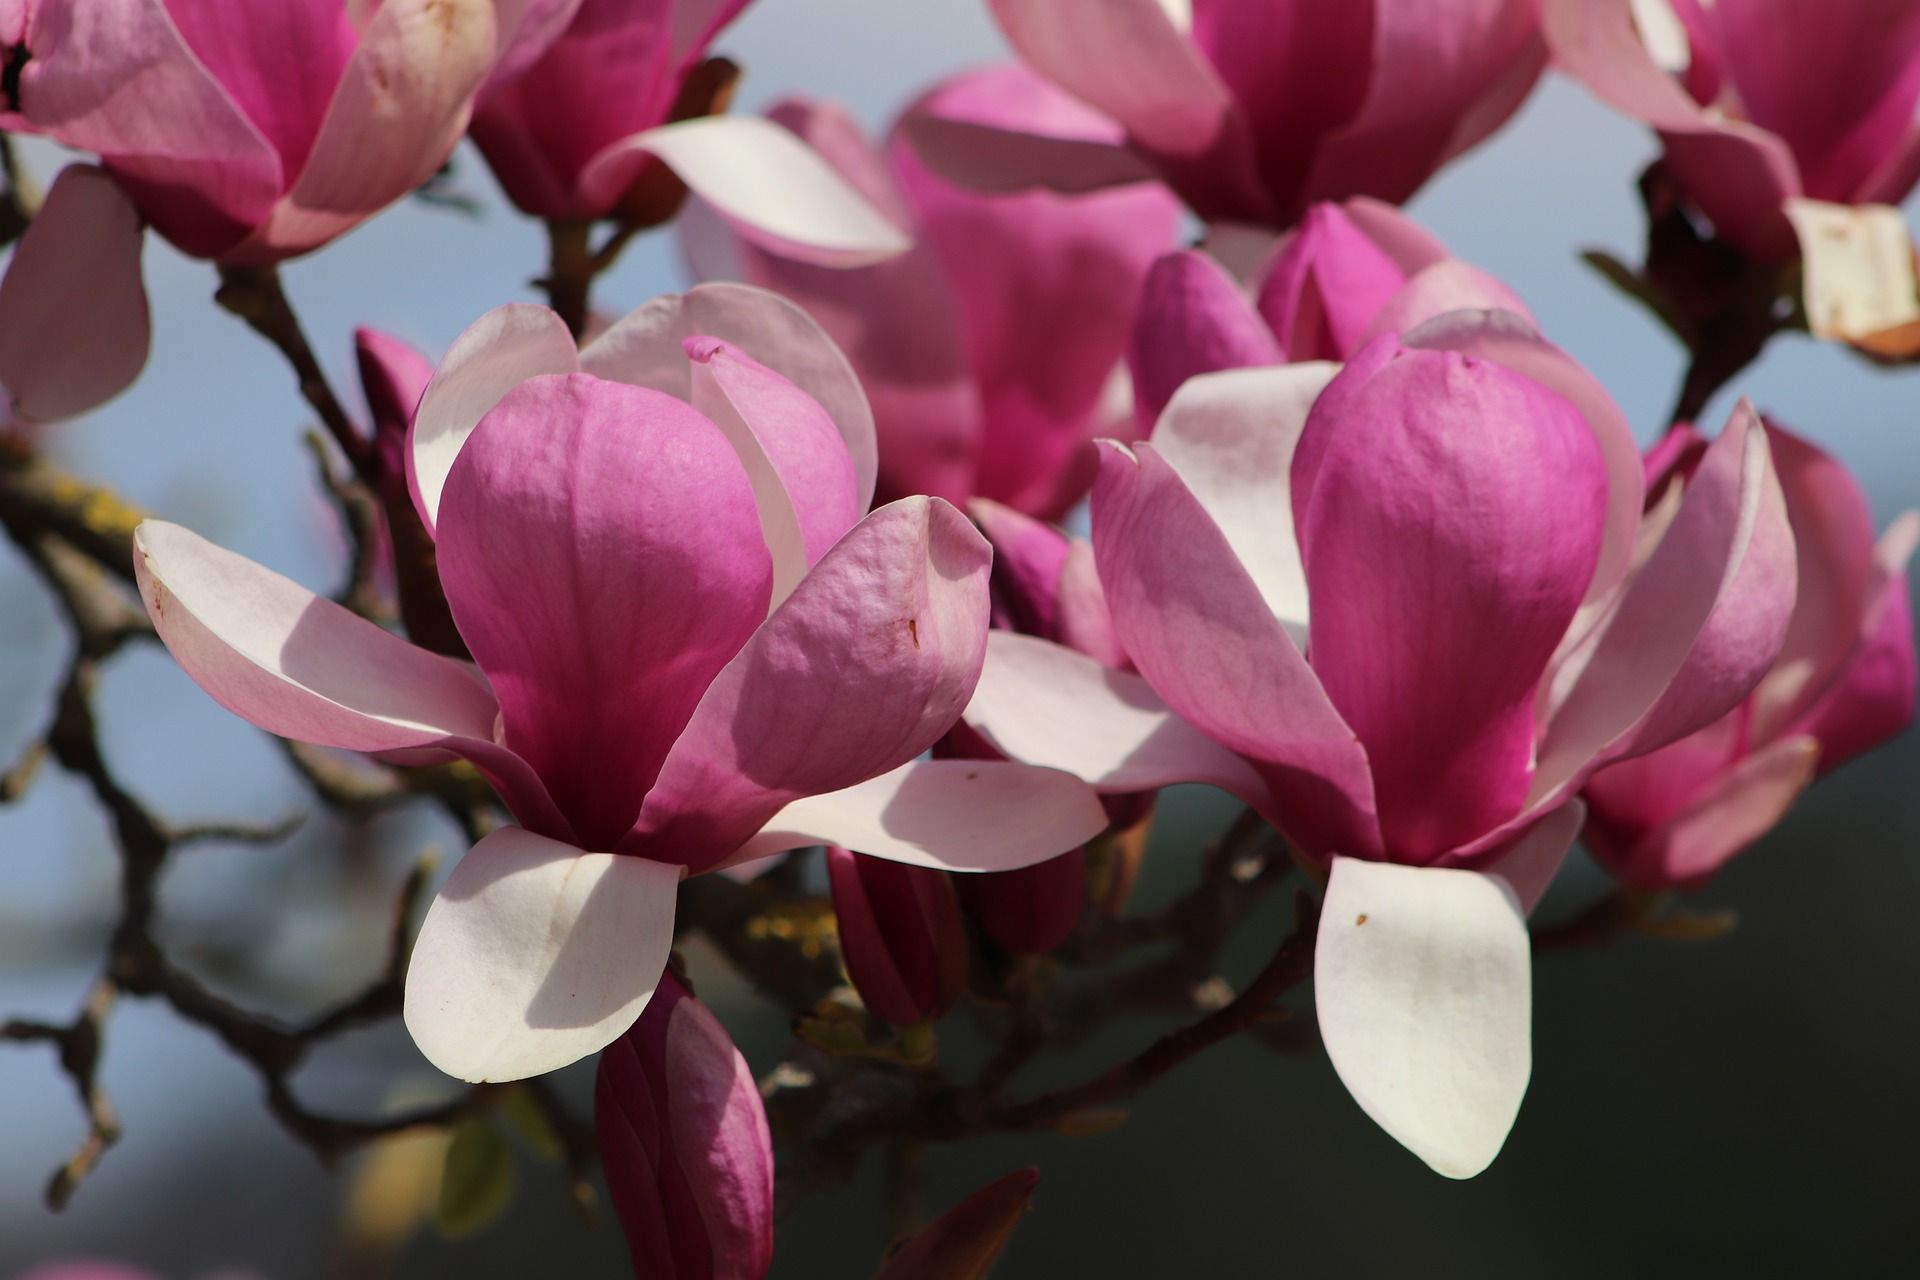 Spring magnolia flowers